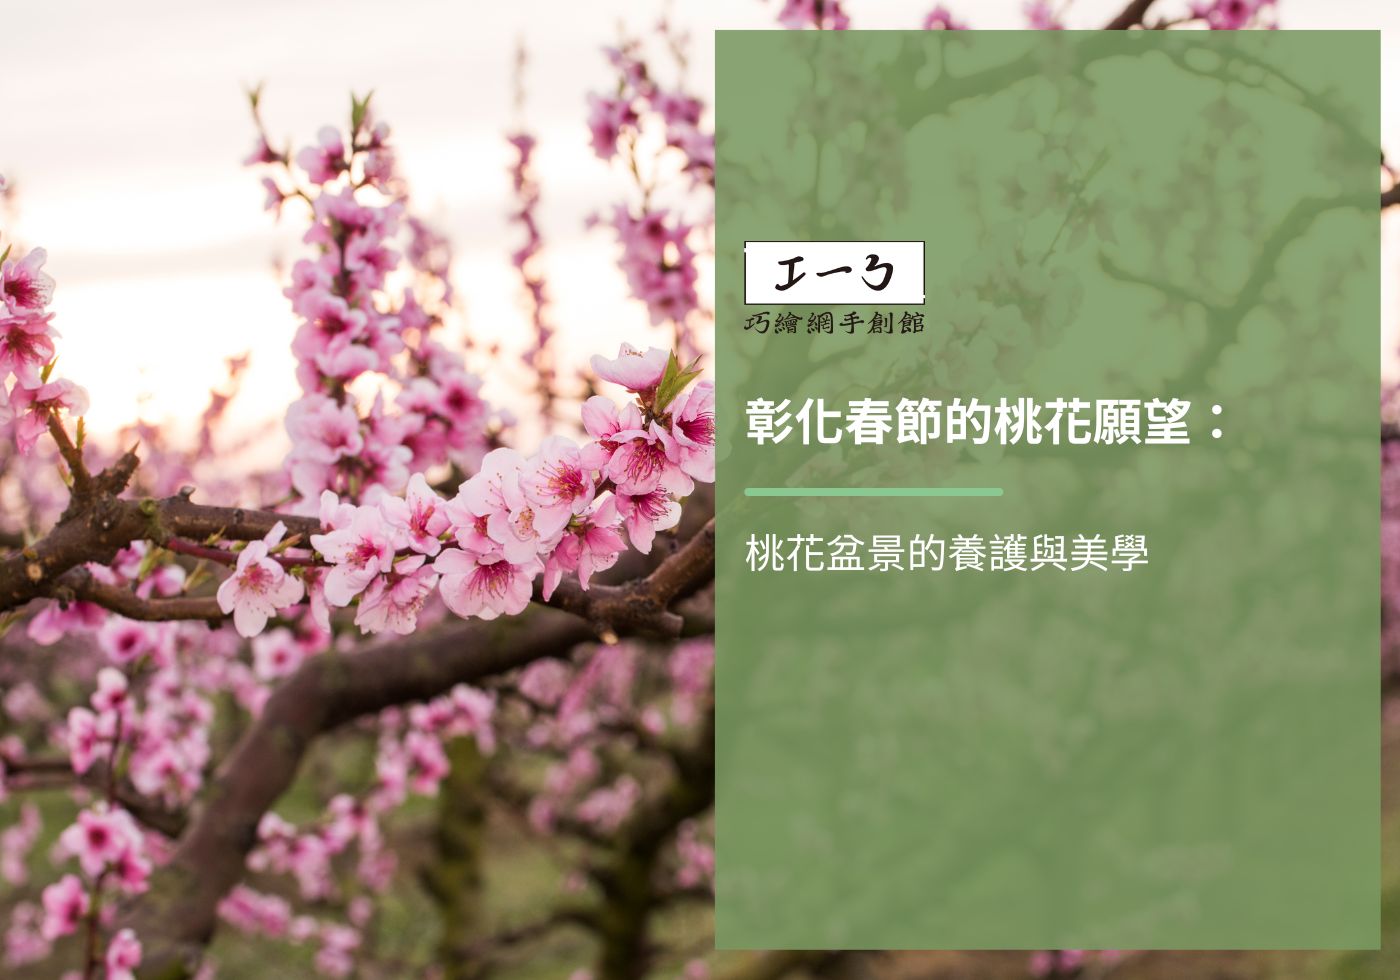 您目前正在查看 彰化春節的桃花願望：桃花盆景的養護與美學